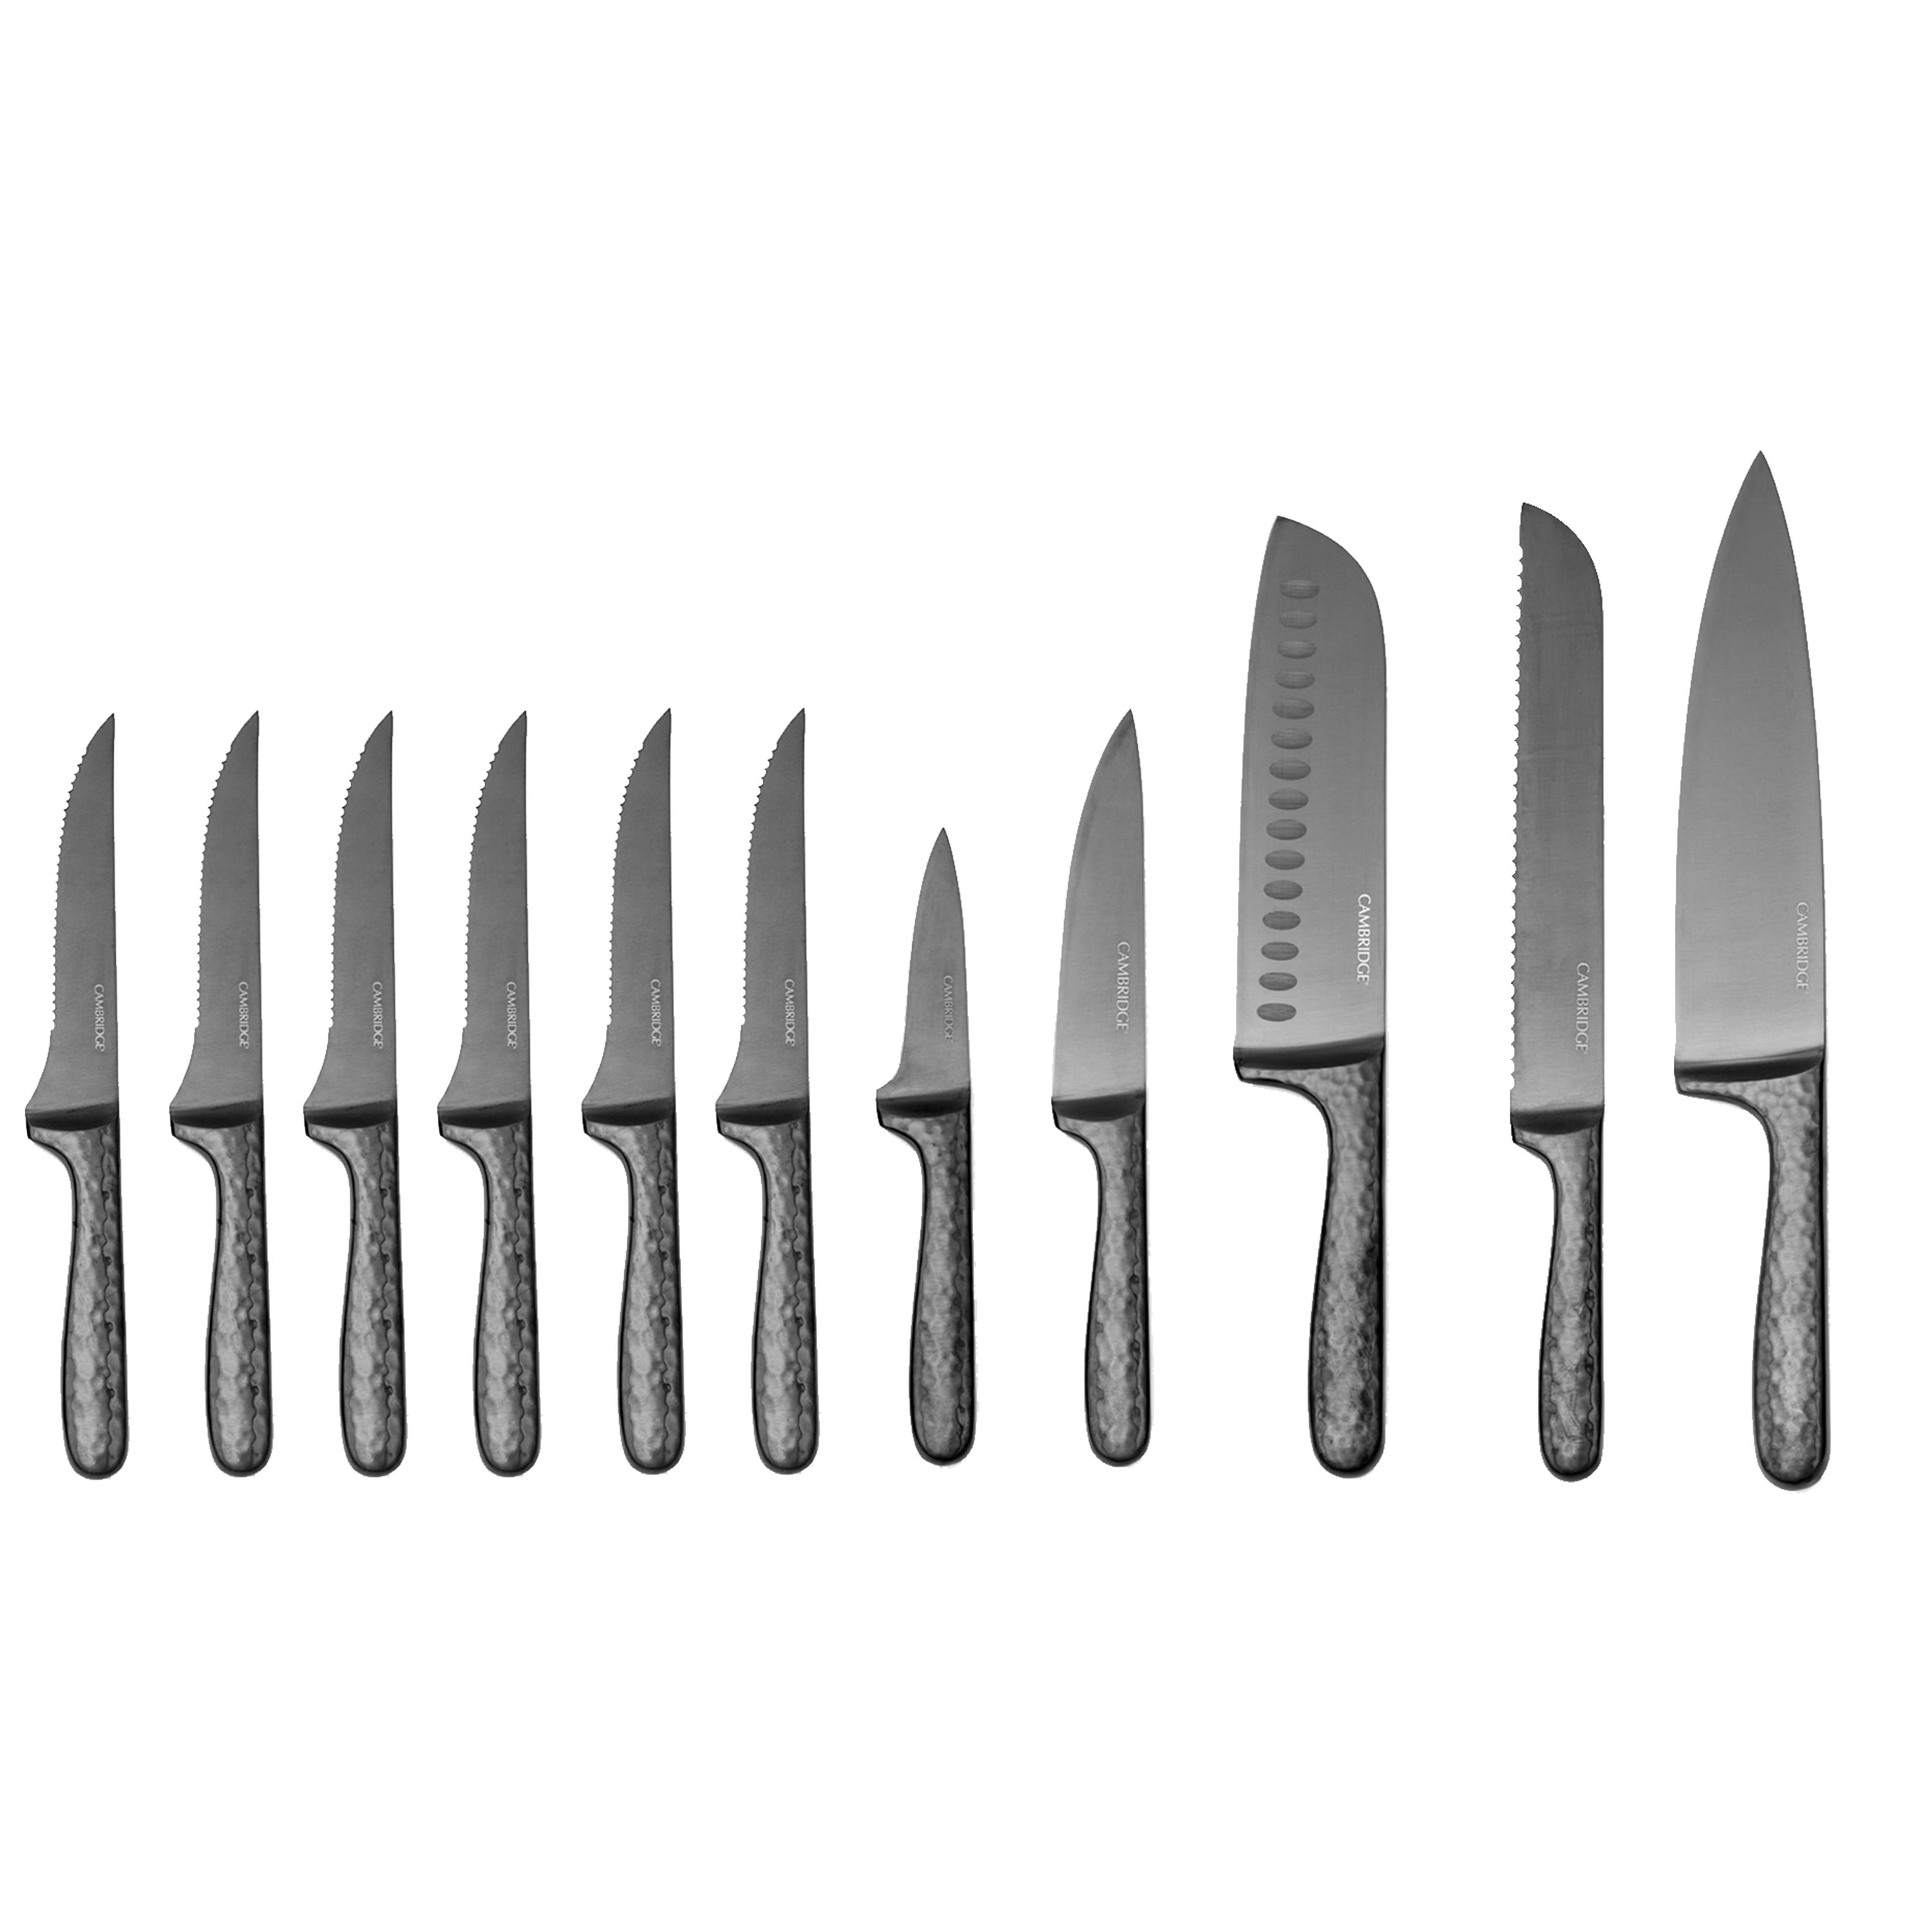 Cambridge Silversmiths Nero Hammered Titanium 12 Piece Cutlery Set with Block